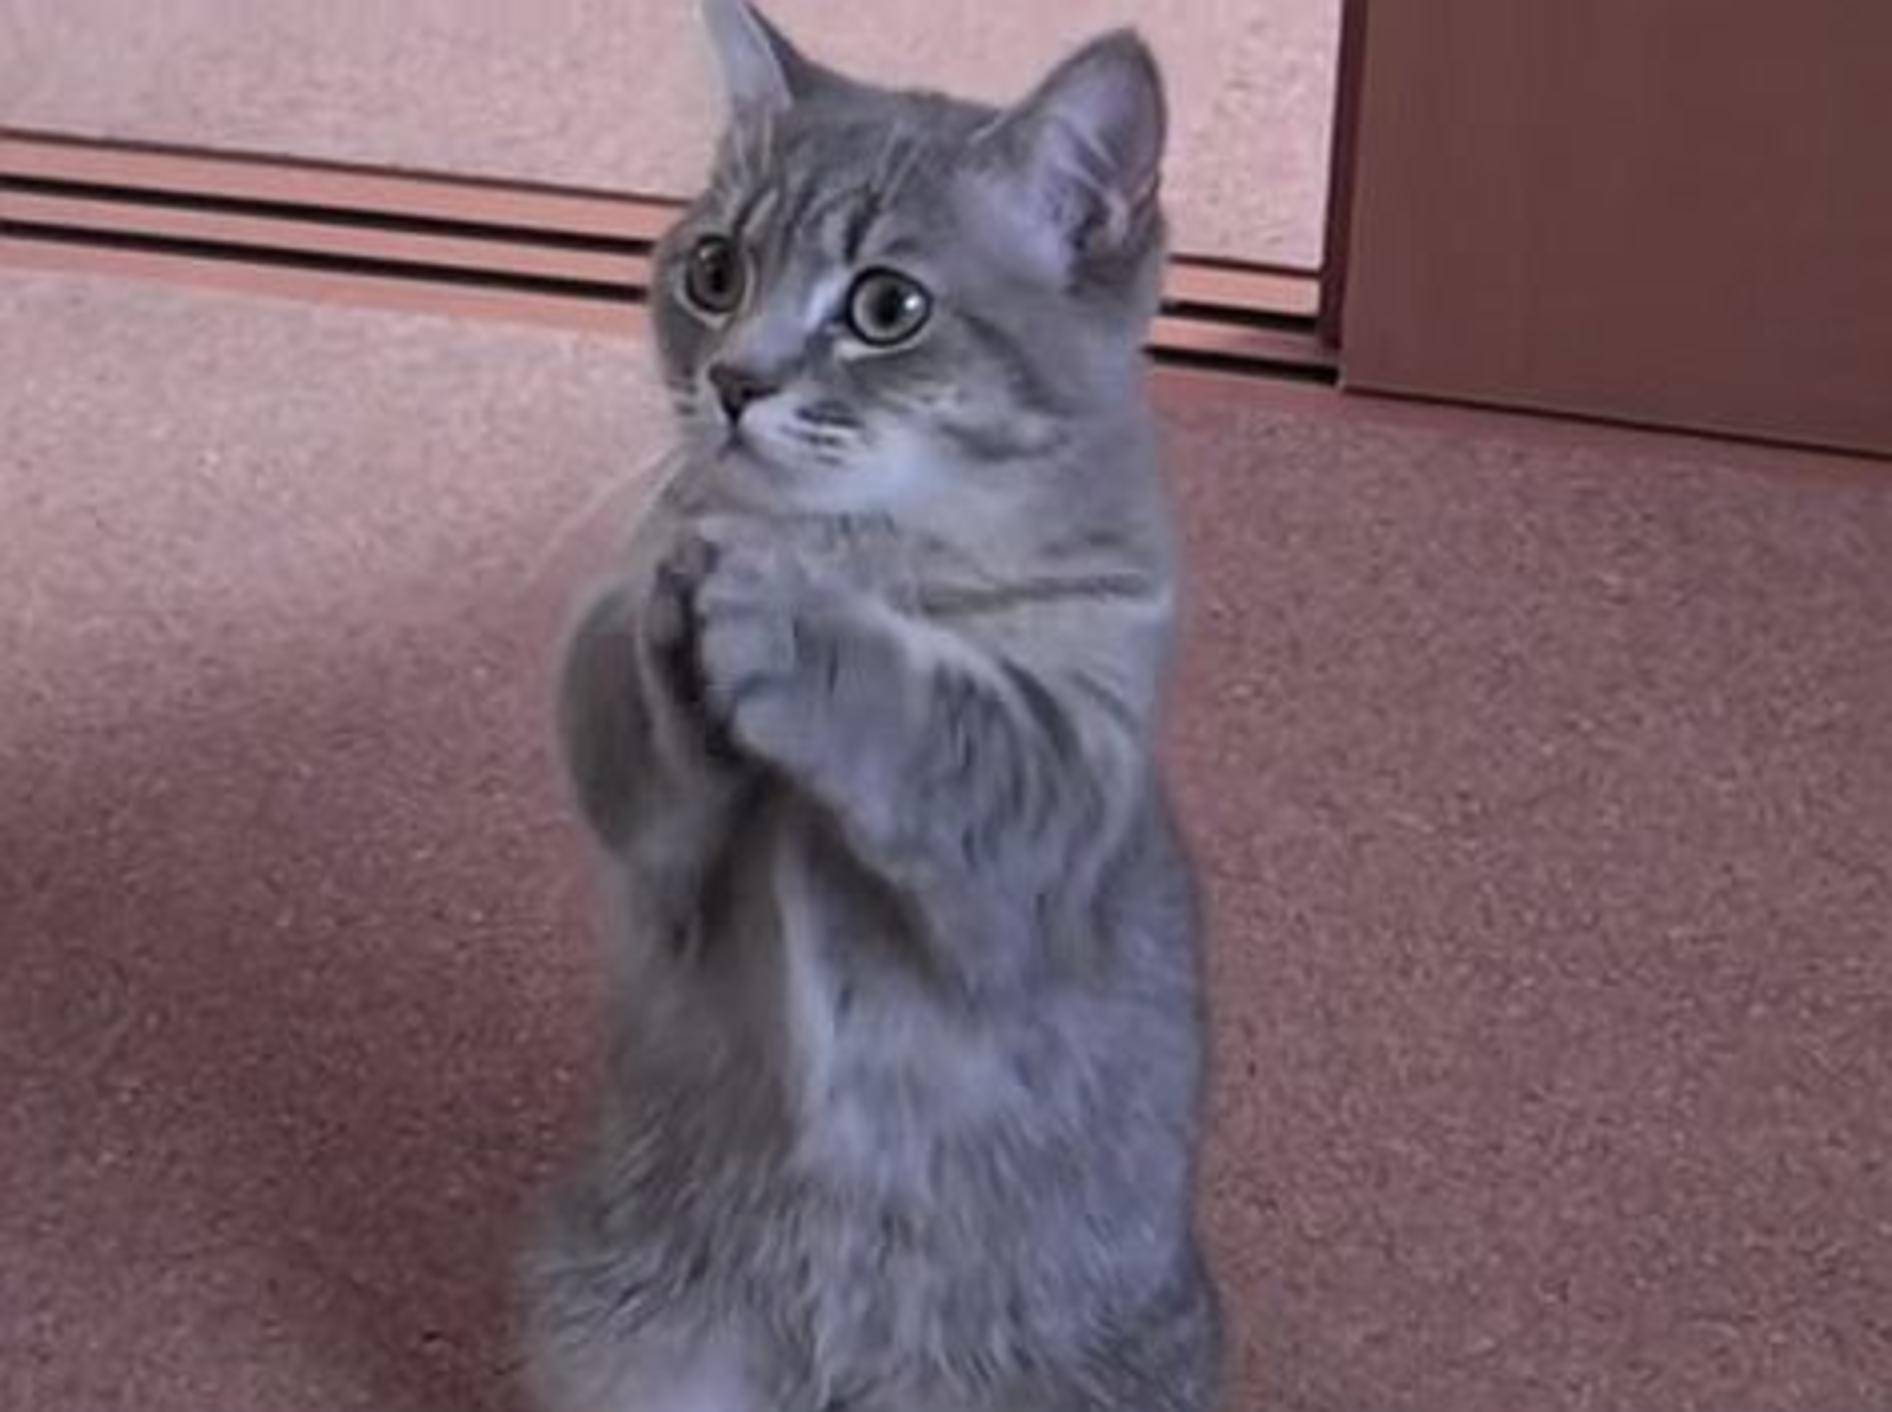 Wer könnte dieser Katze etwas abschlagen? – Bild: Youtube / DekoniM